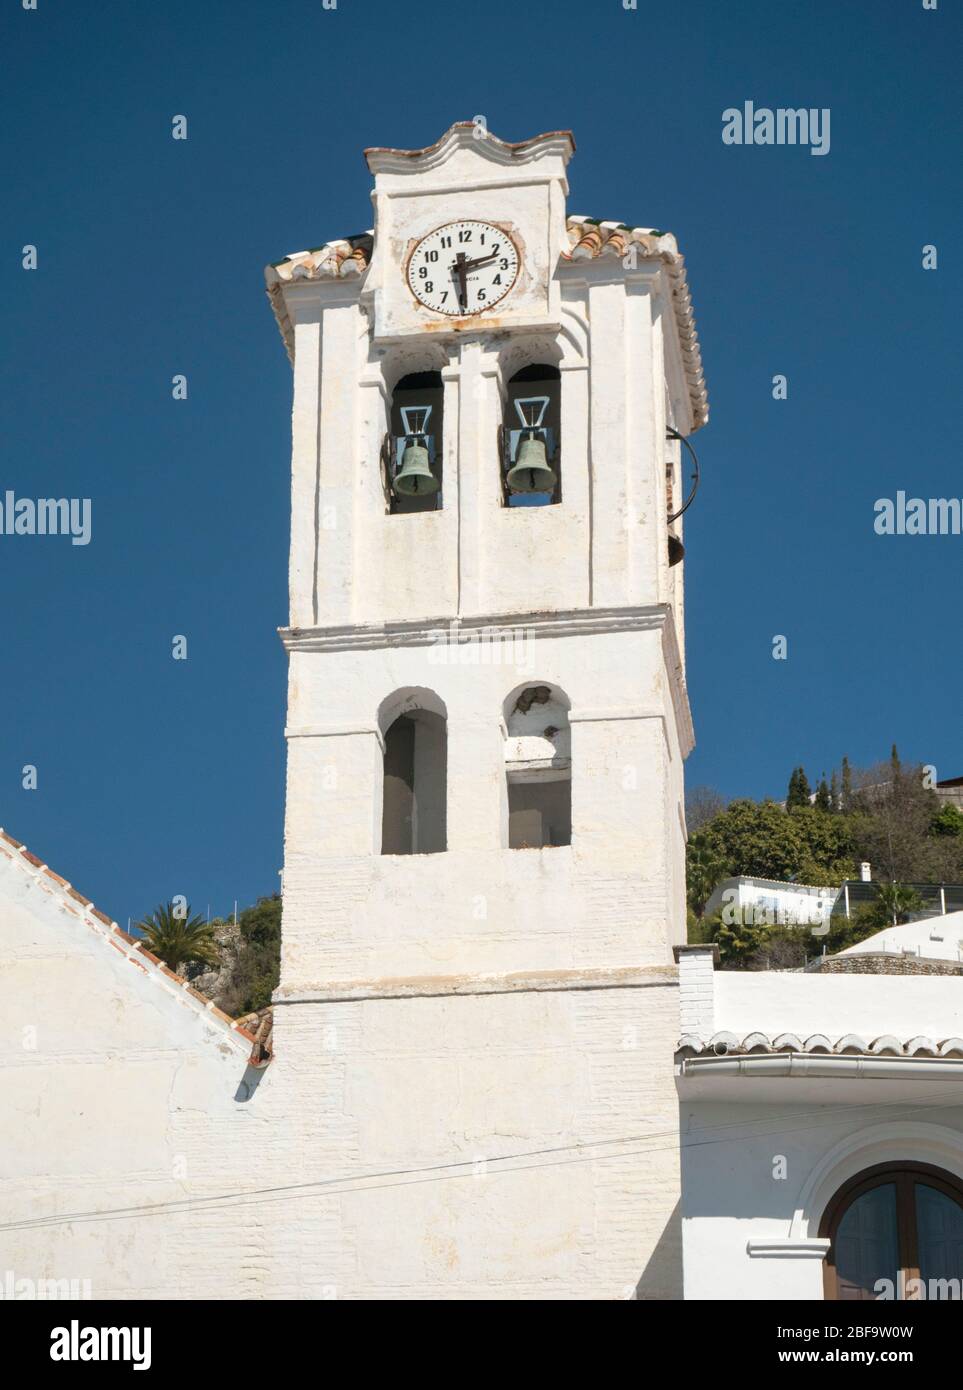 Kirchturm und Glocken der Iglesie de Antonio, vollendet im Renaissancestil im Jahre 1676, Frigiliana, Andalusien, Spanien. Stockfoto